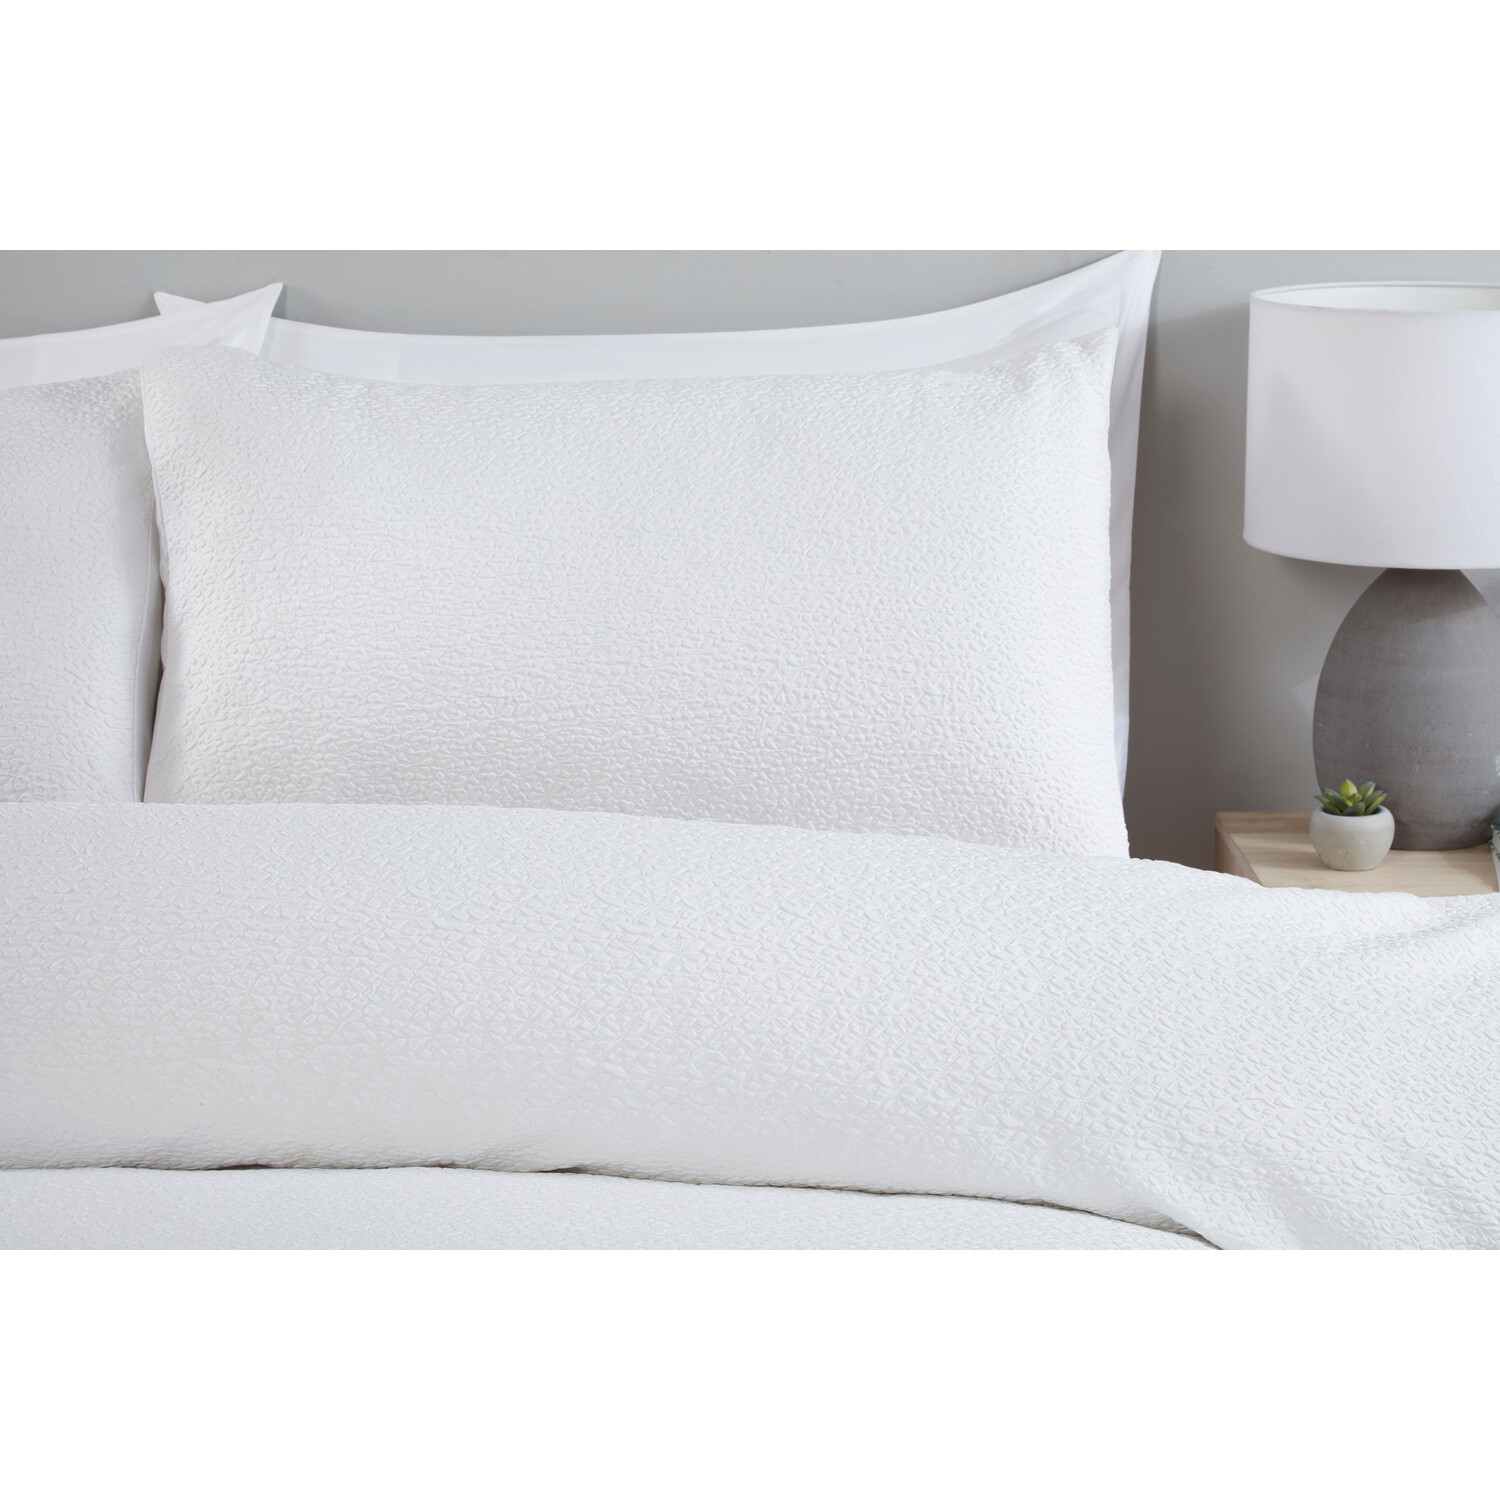 Elise Crinkle Duvet Cover and Pillowcase Set - White / King Image 2